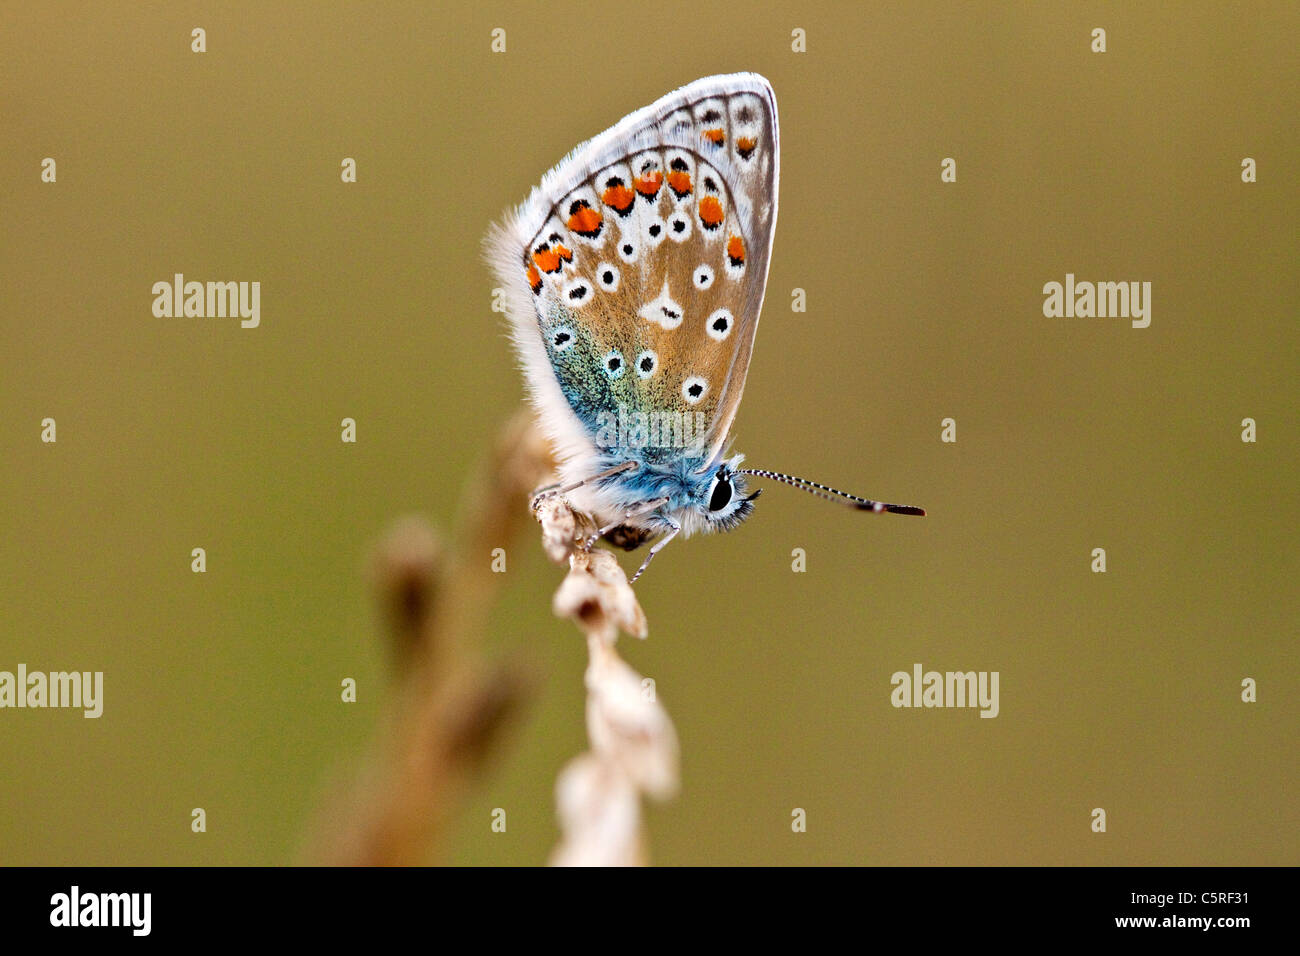 Un papillon bleu commun reposant sur une tige d'herbe Banque D'Images